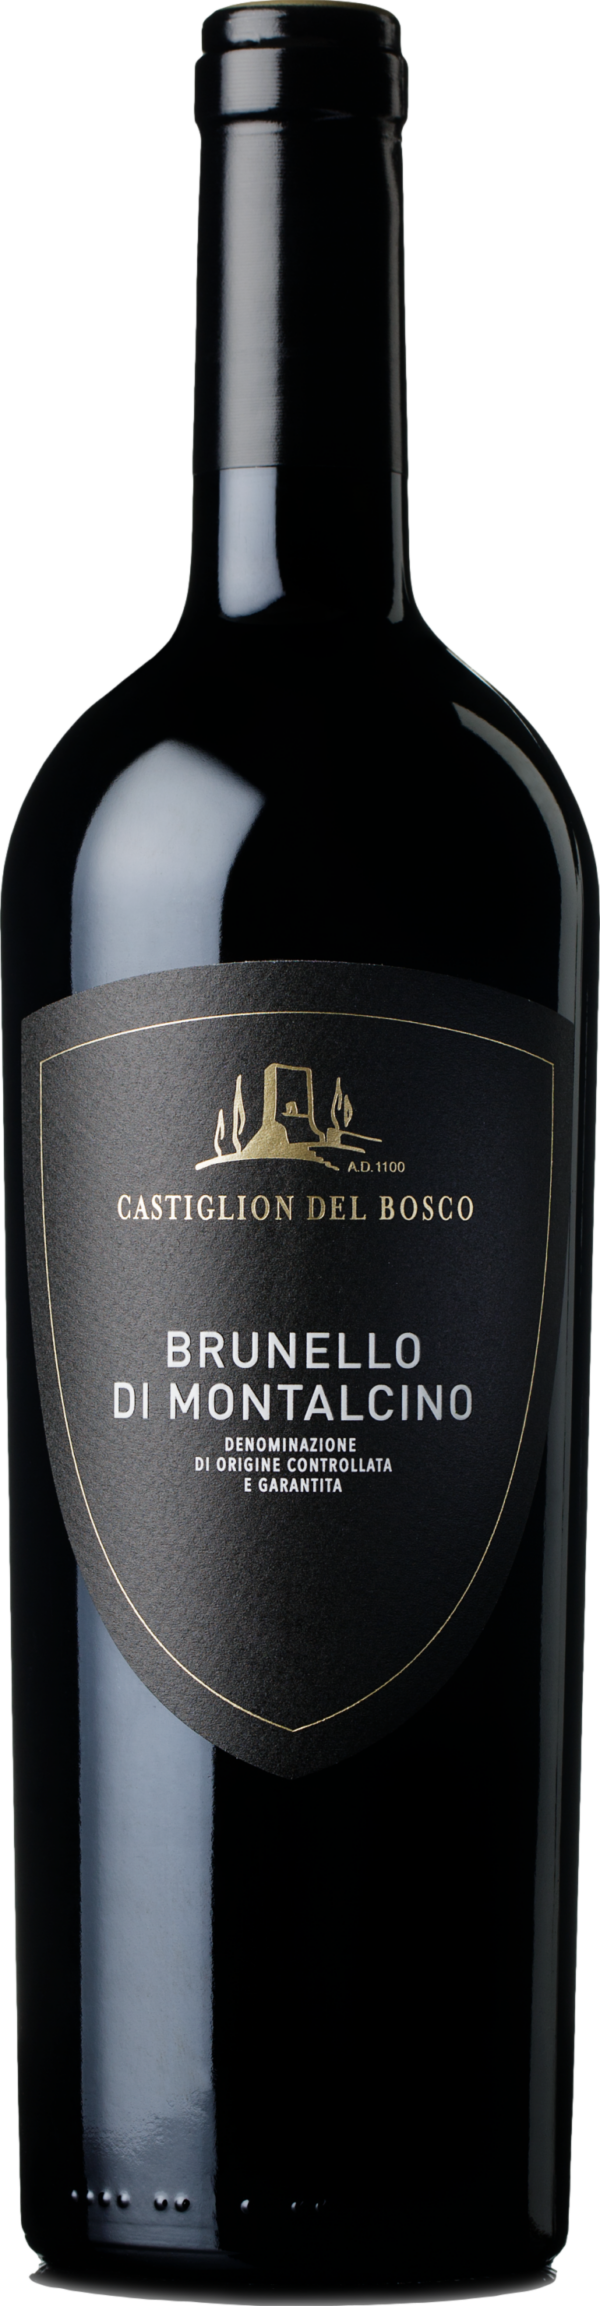 Product image of Castiglion del Bosco Brunello di Montalcino 2017 from 8wines